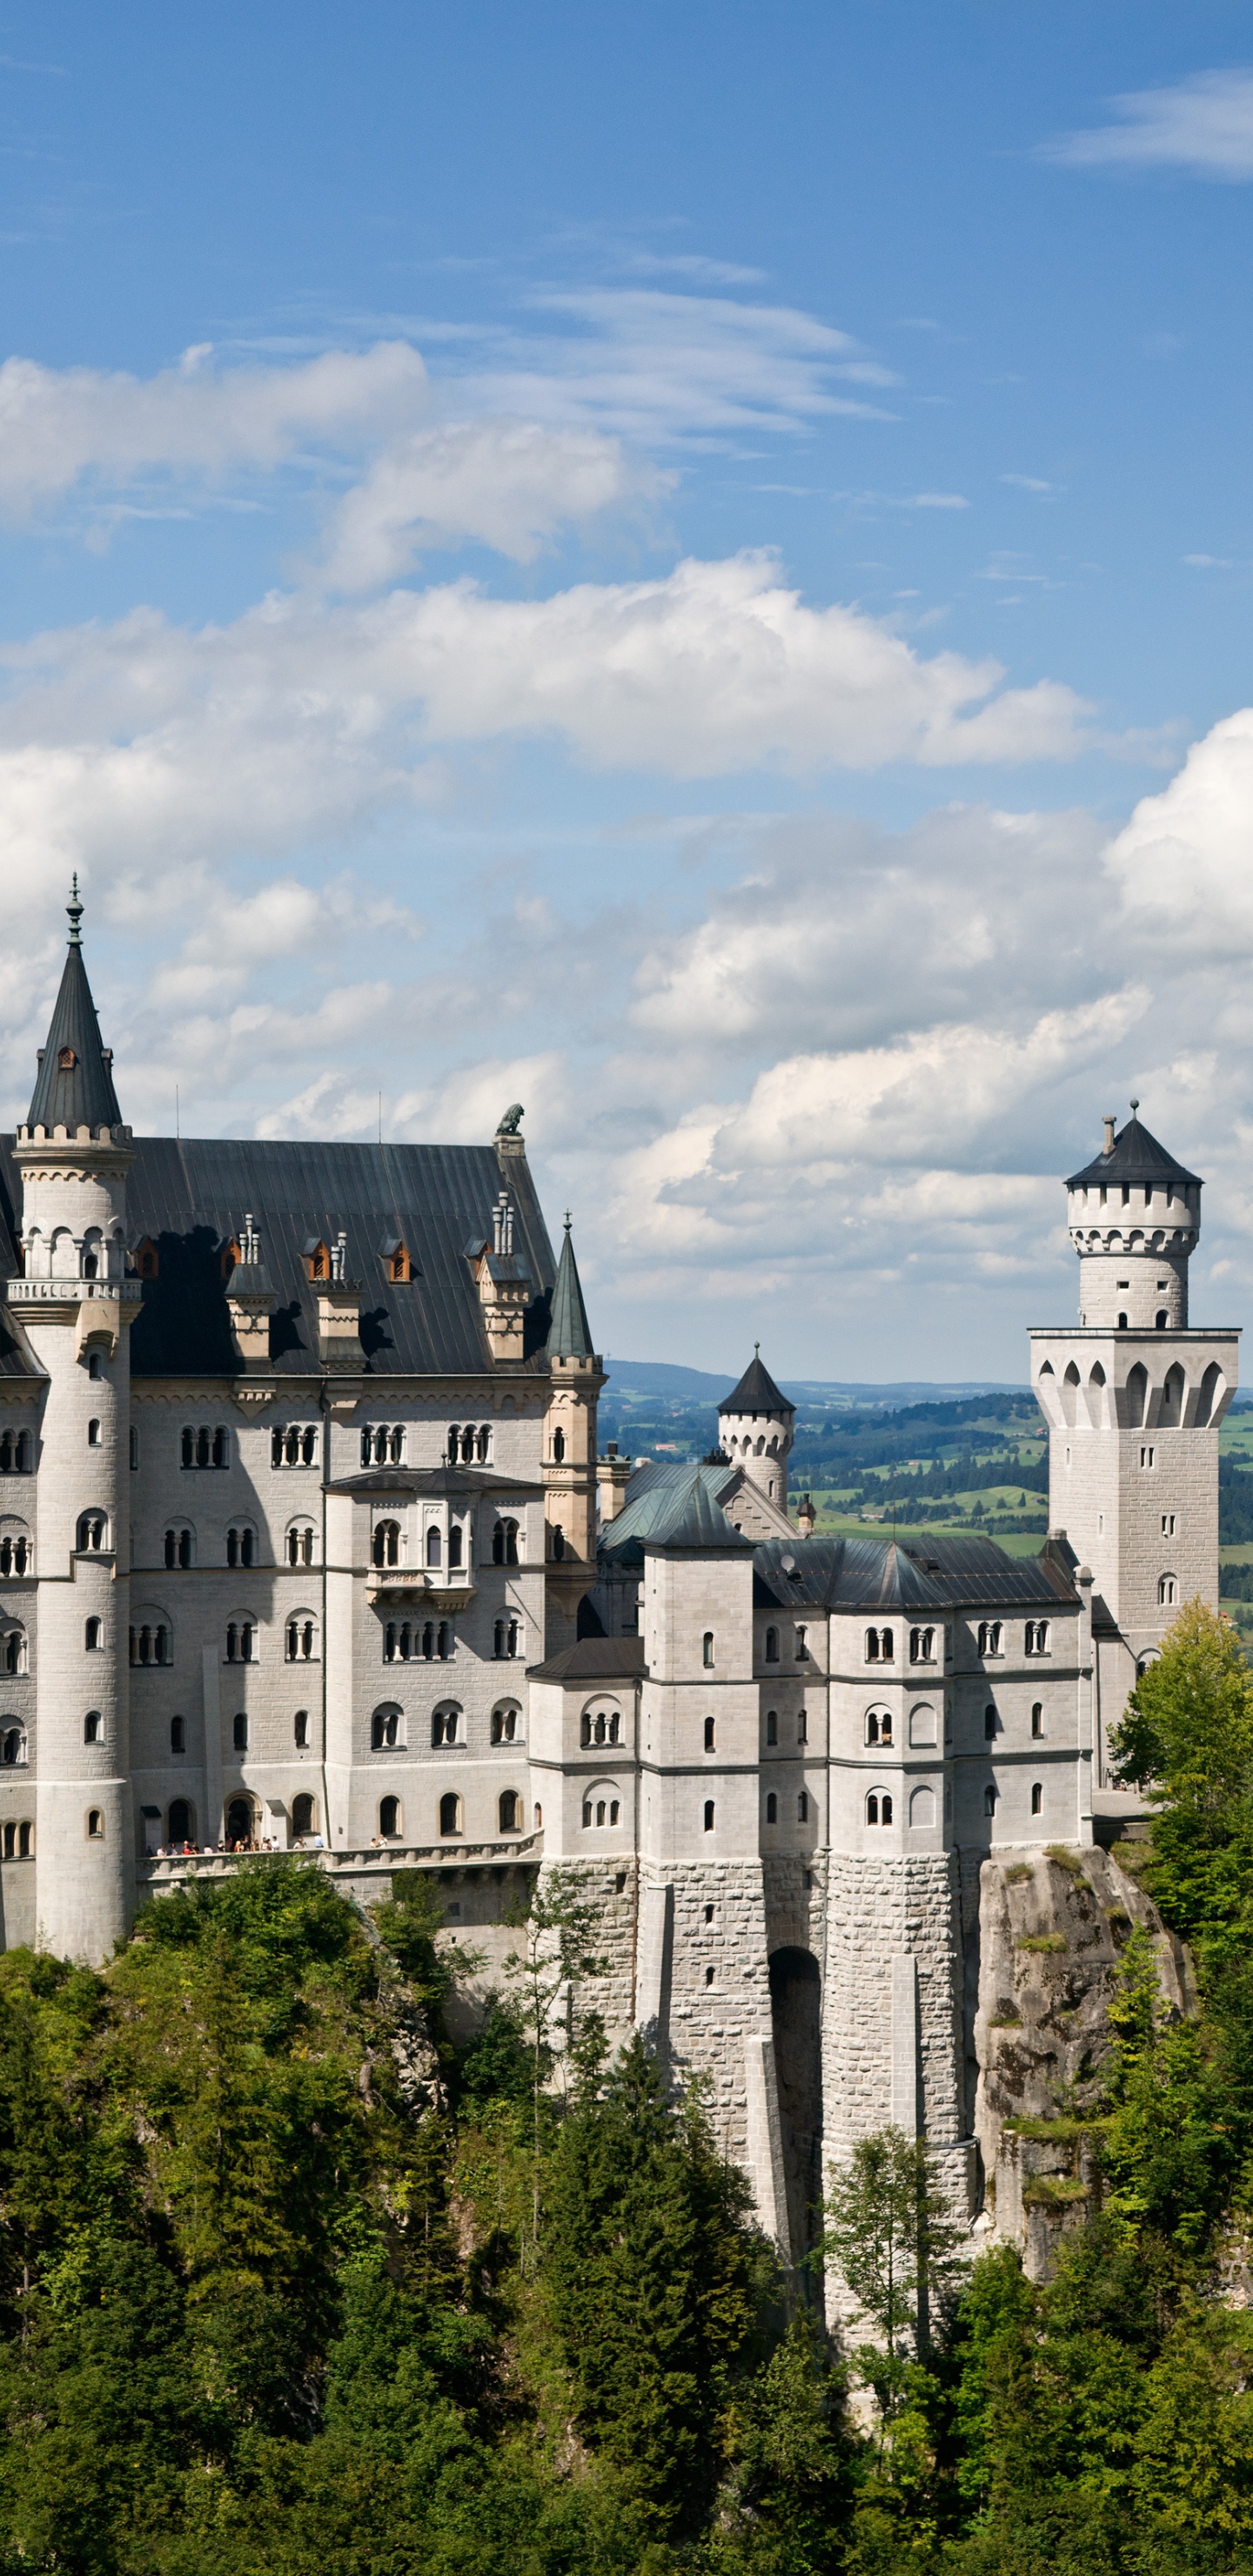 Neuschwanstein Castle - Bavaria Germany